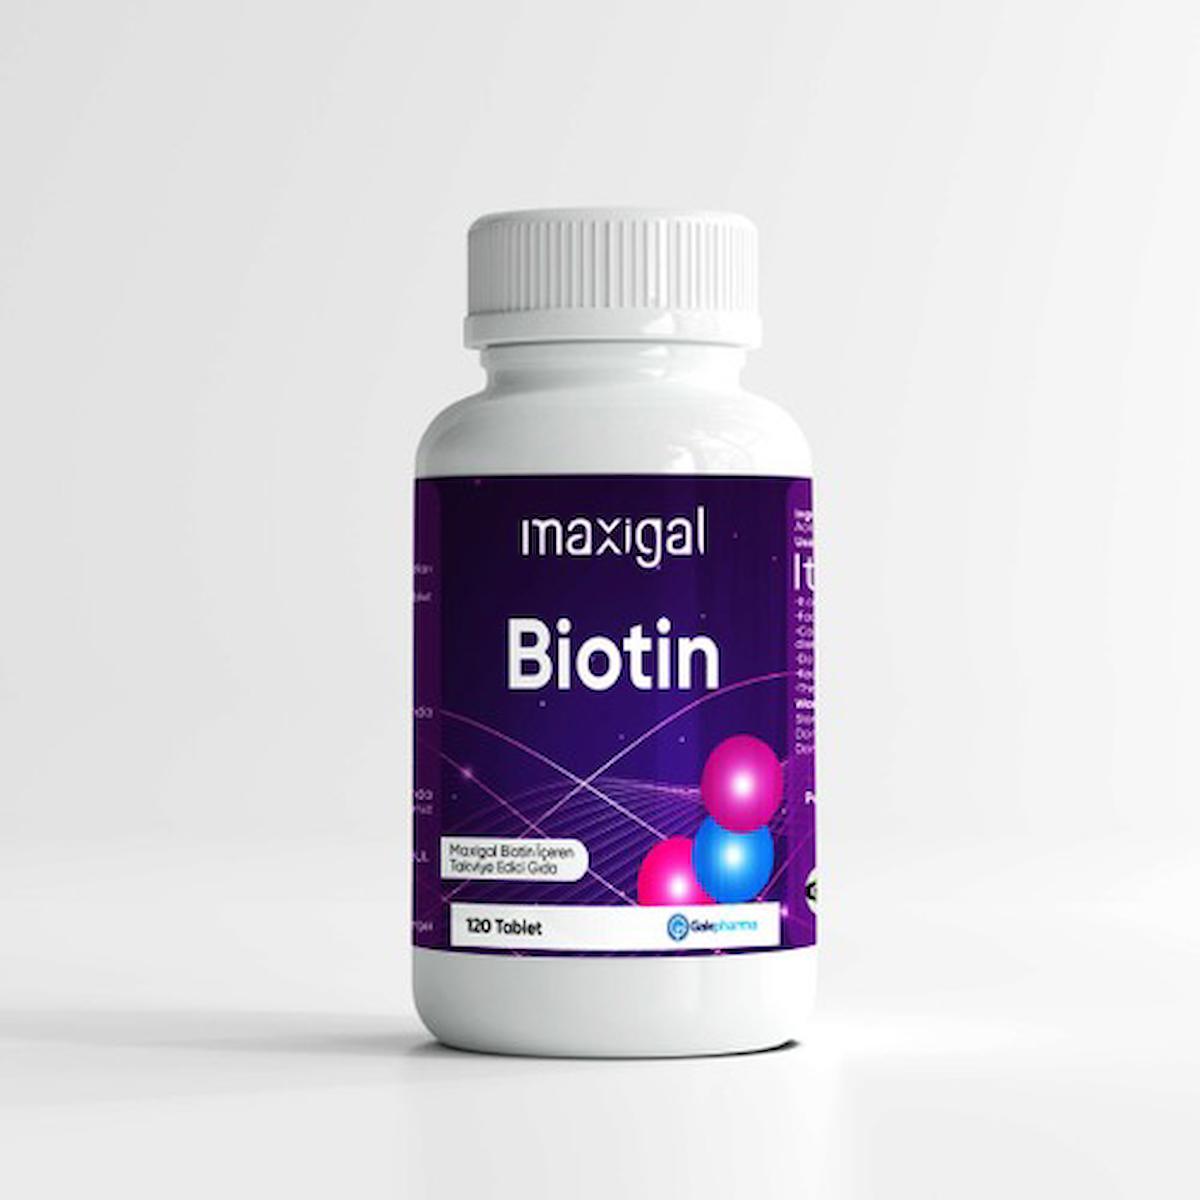 Maxigal Biotin Aromasız Unisex Vitamin 120 Tablet